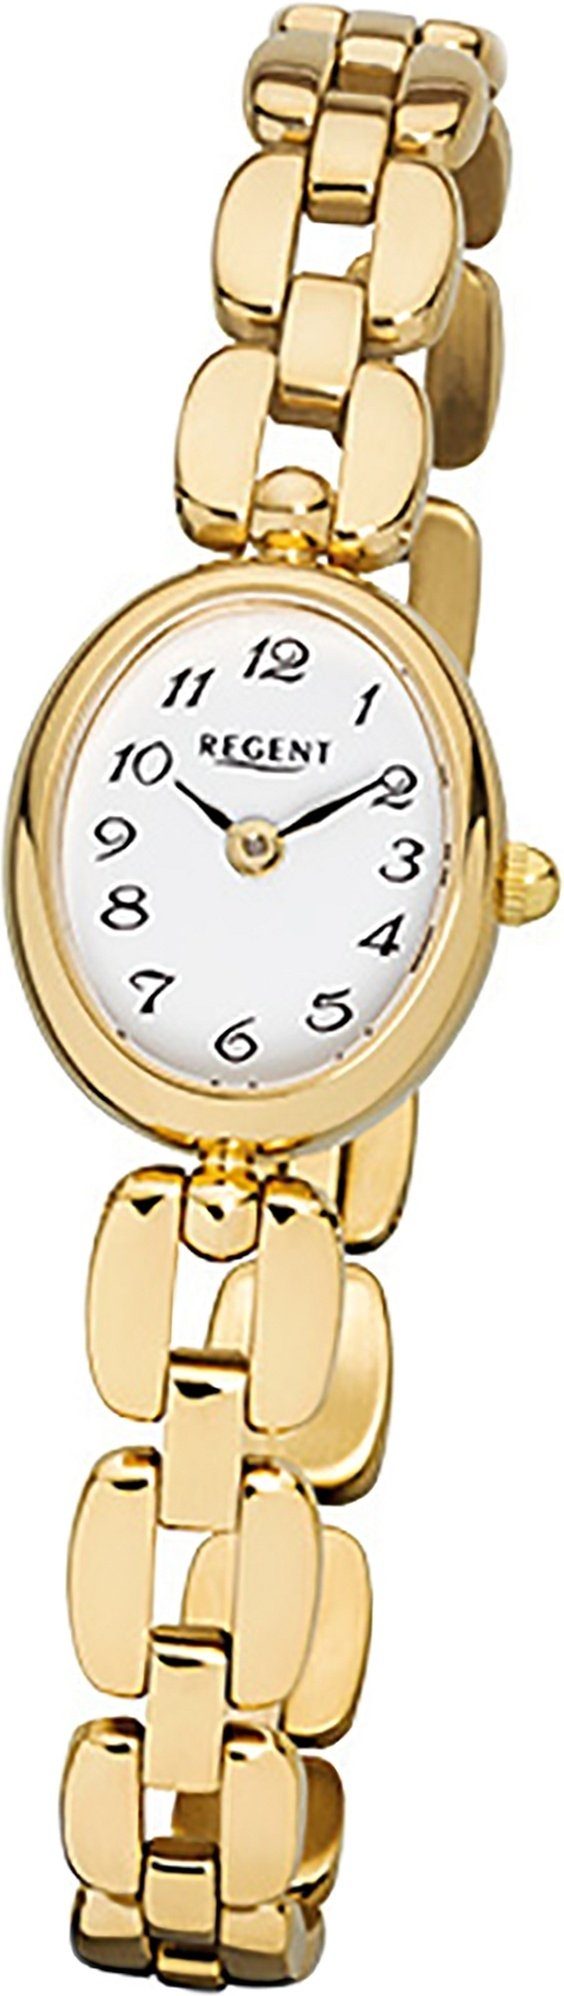 Regent Quarzuhr Regent Stahl Damen Uhr F-968 Quarzuhr, (Analoguhr), Damenuhr mit Edelstahl, ionenplattiert goldarmband, ovales Gehäuse, kl